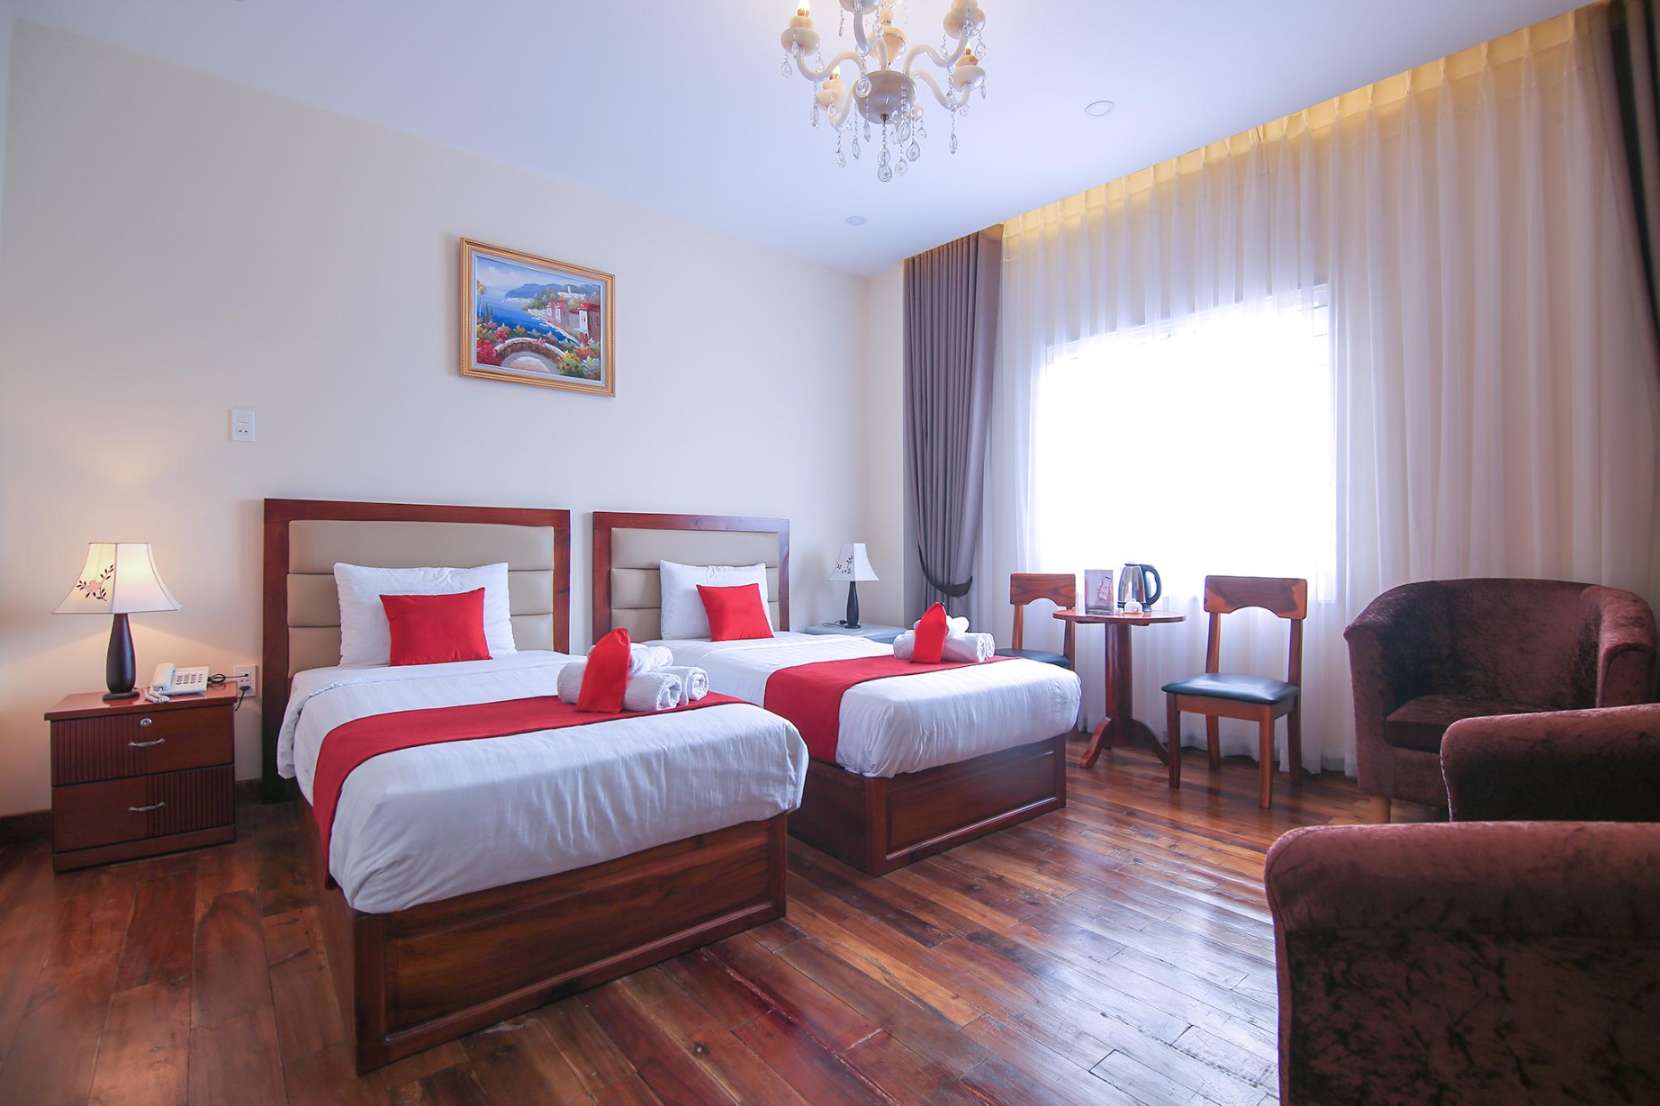 Kadupul Hotel Nguyen Thai Son - Khách sạn gần sân bay Tân Sơn Nhất